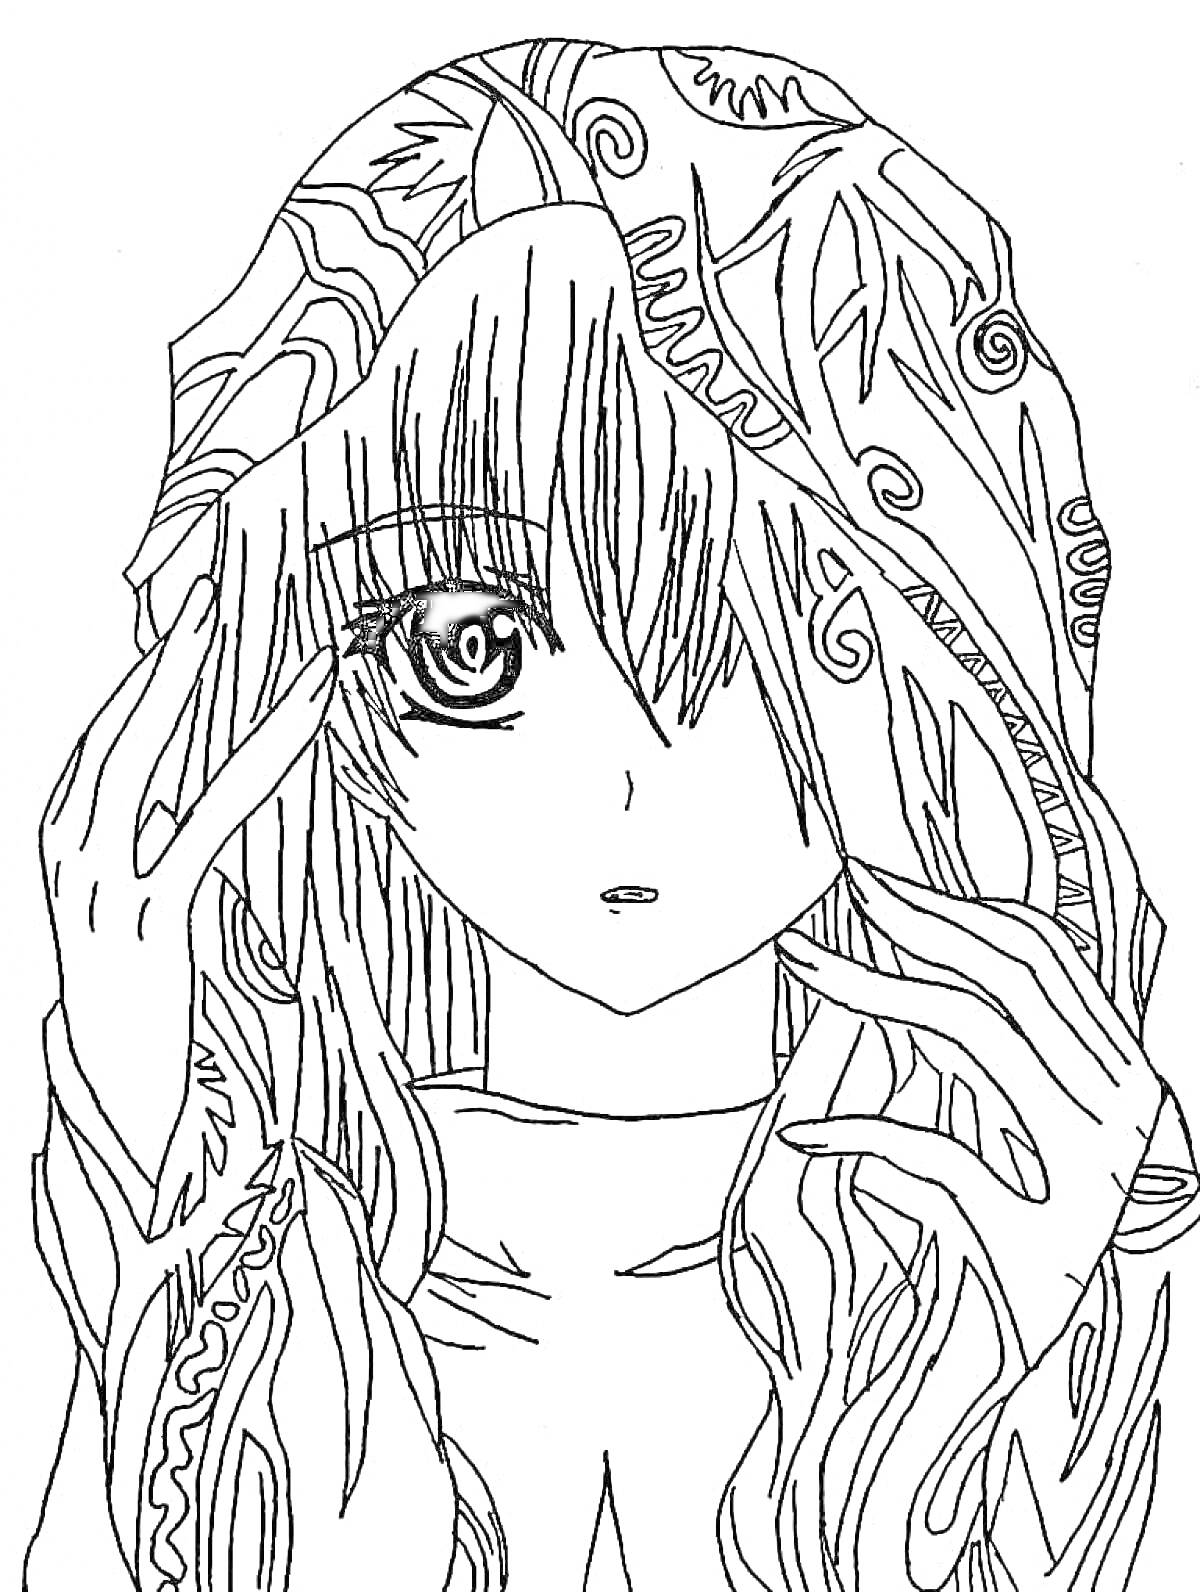 Раскраска Девочка аниме с длинными волосами и капюшоном, украшенным узорами